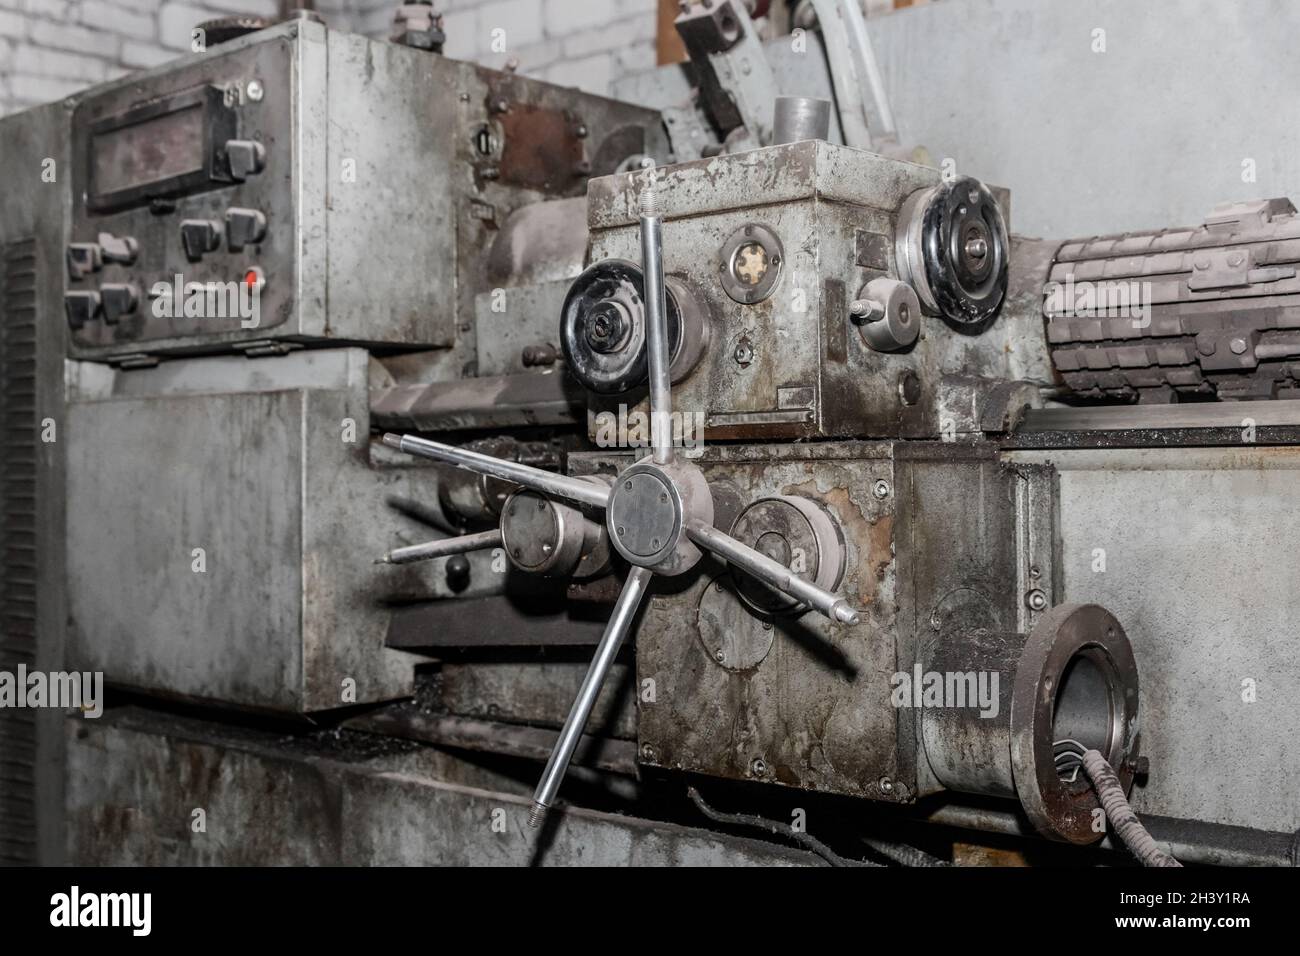 Drehmaschine Revolver alte Maschinenausrüstung für Schlosserarbeiten in einem Industriebetrieb. Stockfoto